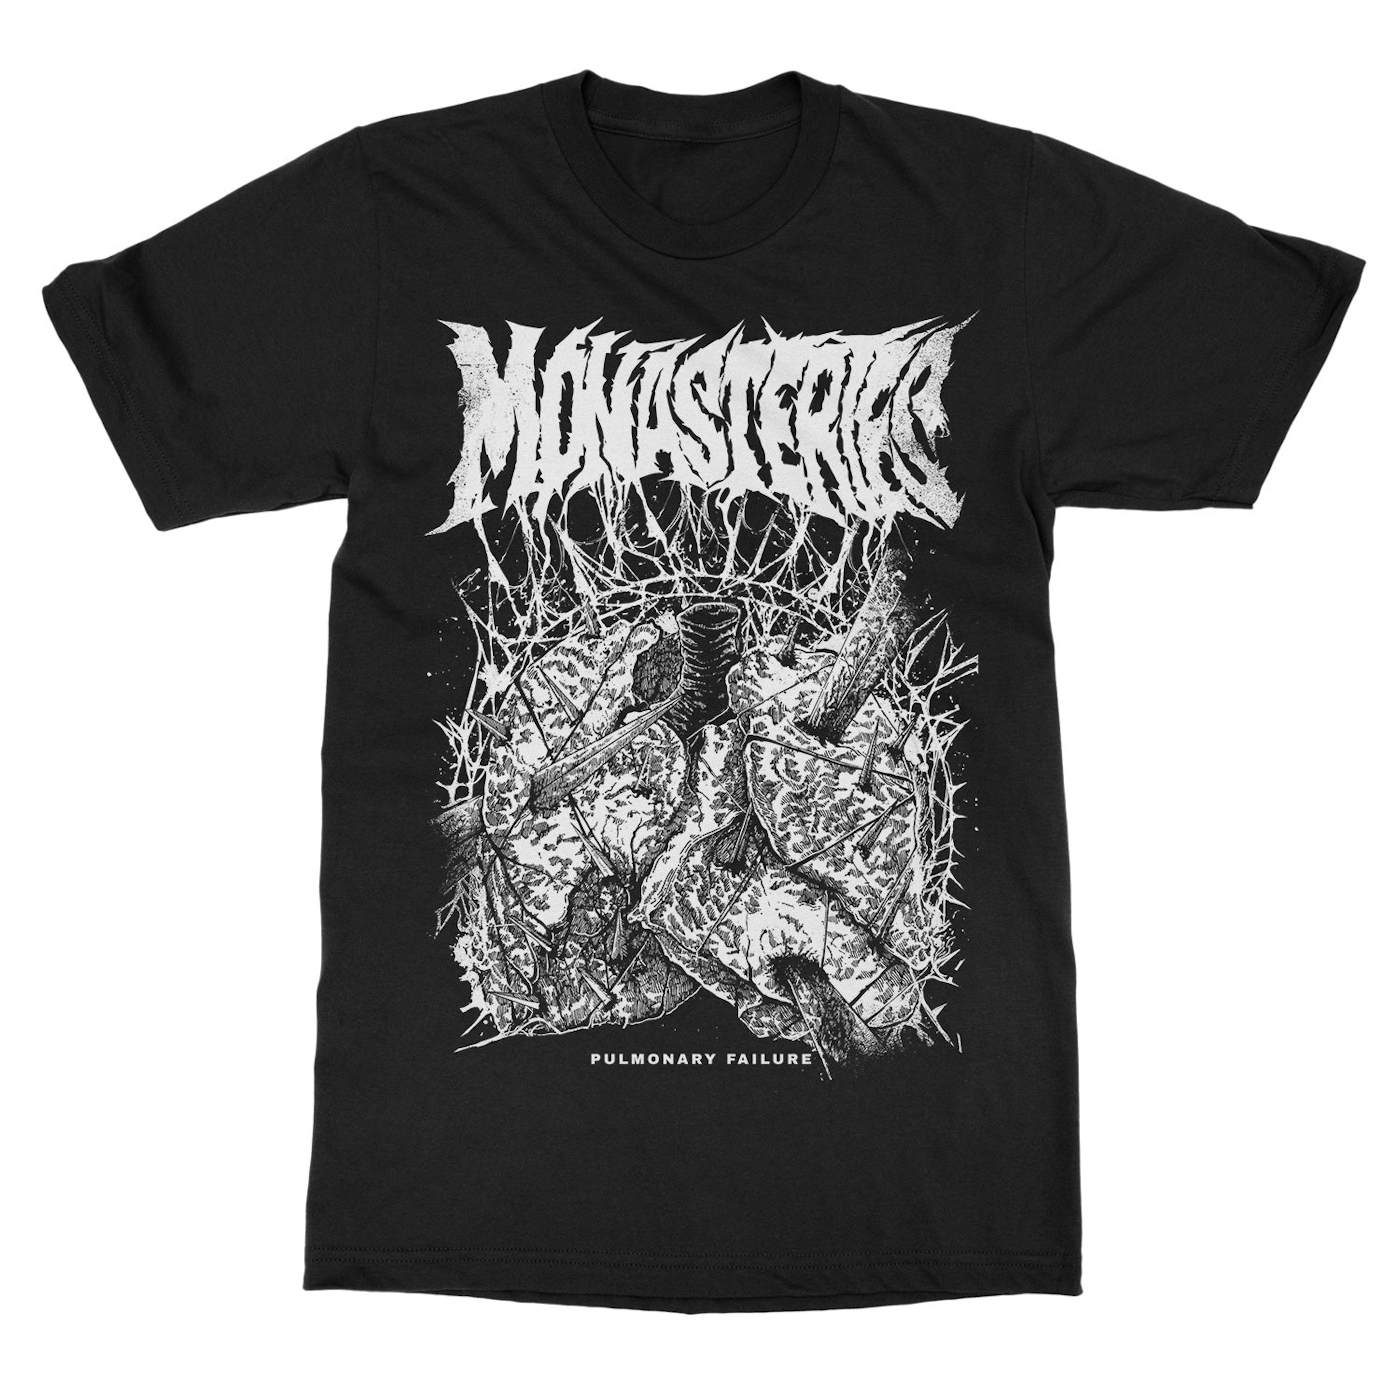 Monasteries "Pulmonary" T-Shirt